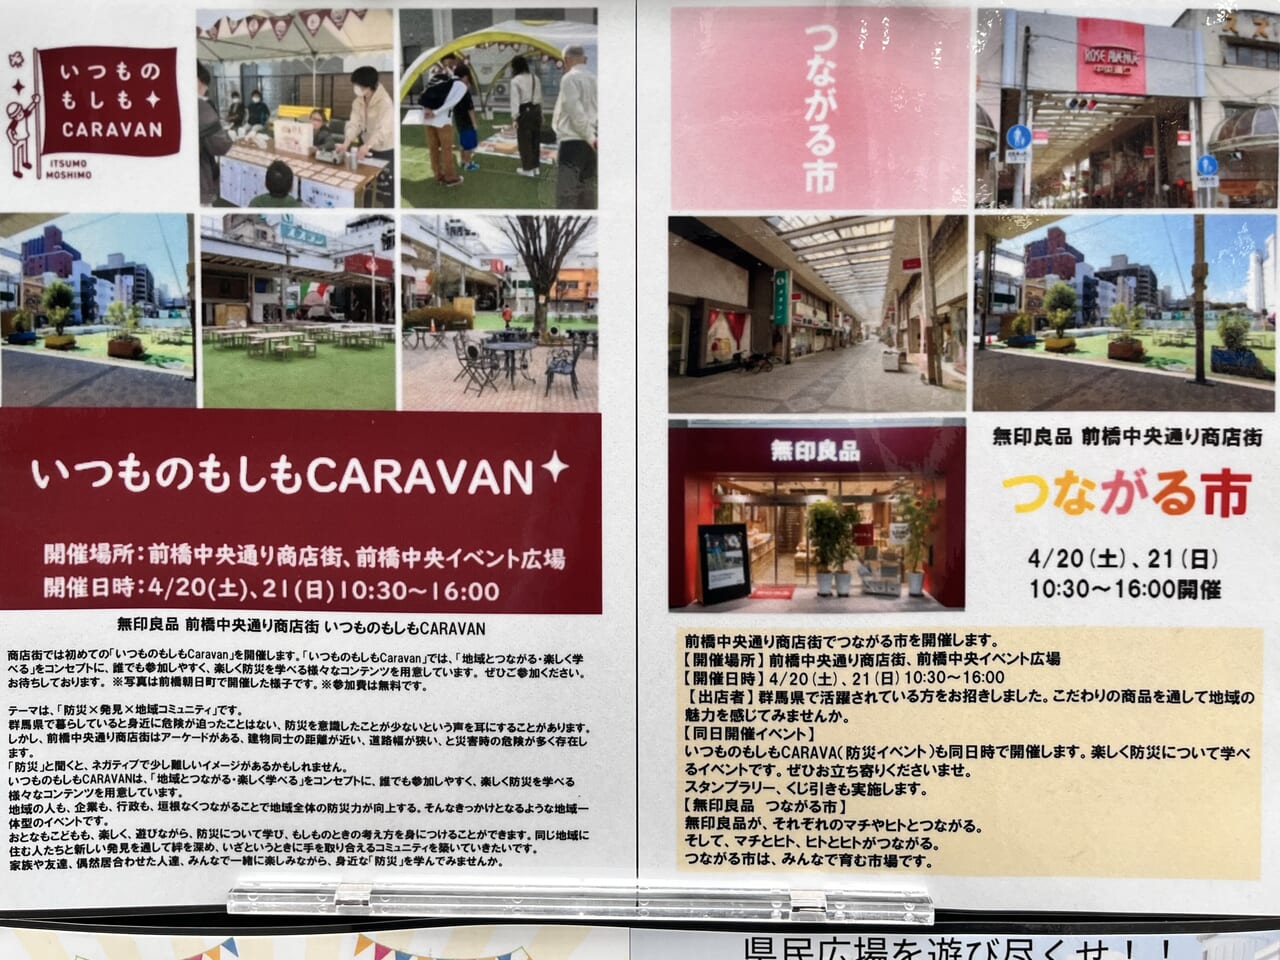 「いつものもしもCARAVAN」と「つながる市」開催告知のポスター